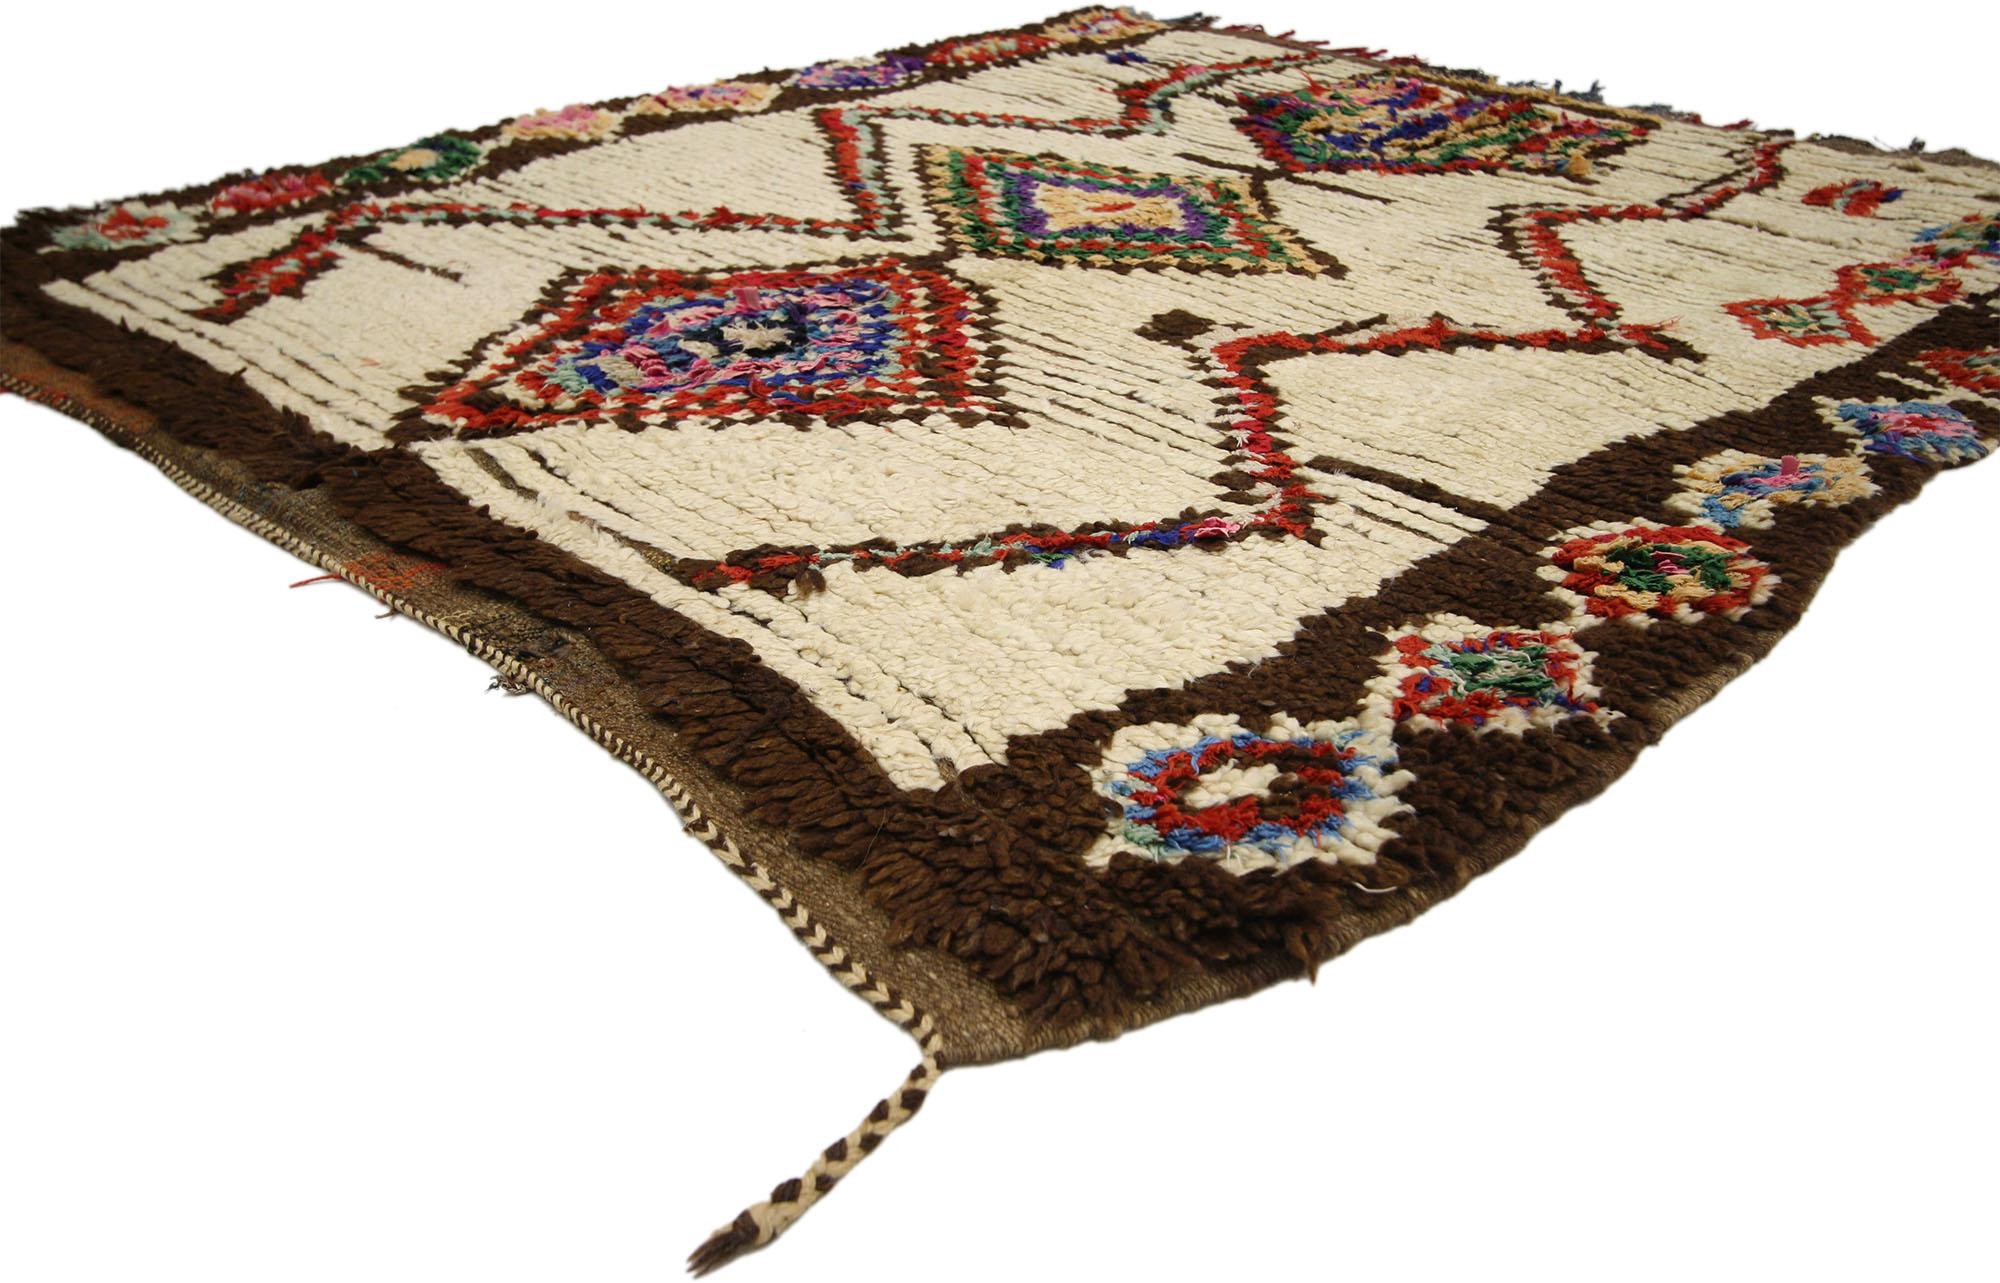 74520 Vintage Boucherouite Marokkanischer Azilal-Teppich, 04'09 X 04'11. Der Stammesstil und die farbenfrohen Farbtöne dieses marokkanischen Boucherouite-Teppichs im Vintage-Stil schaffen eine einladende und entspannte Aura, die das Stück umgibt.